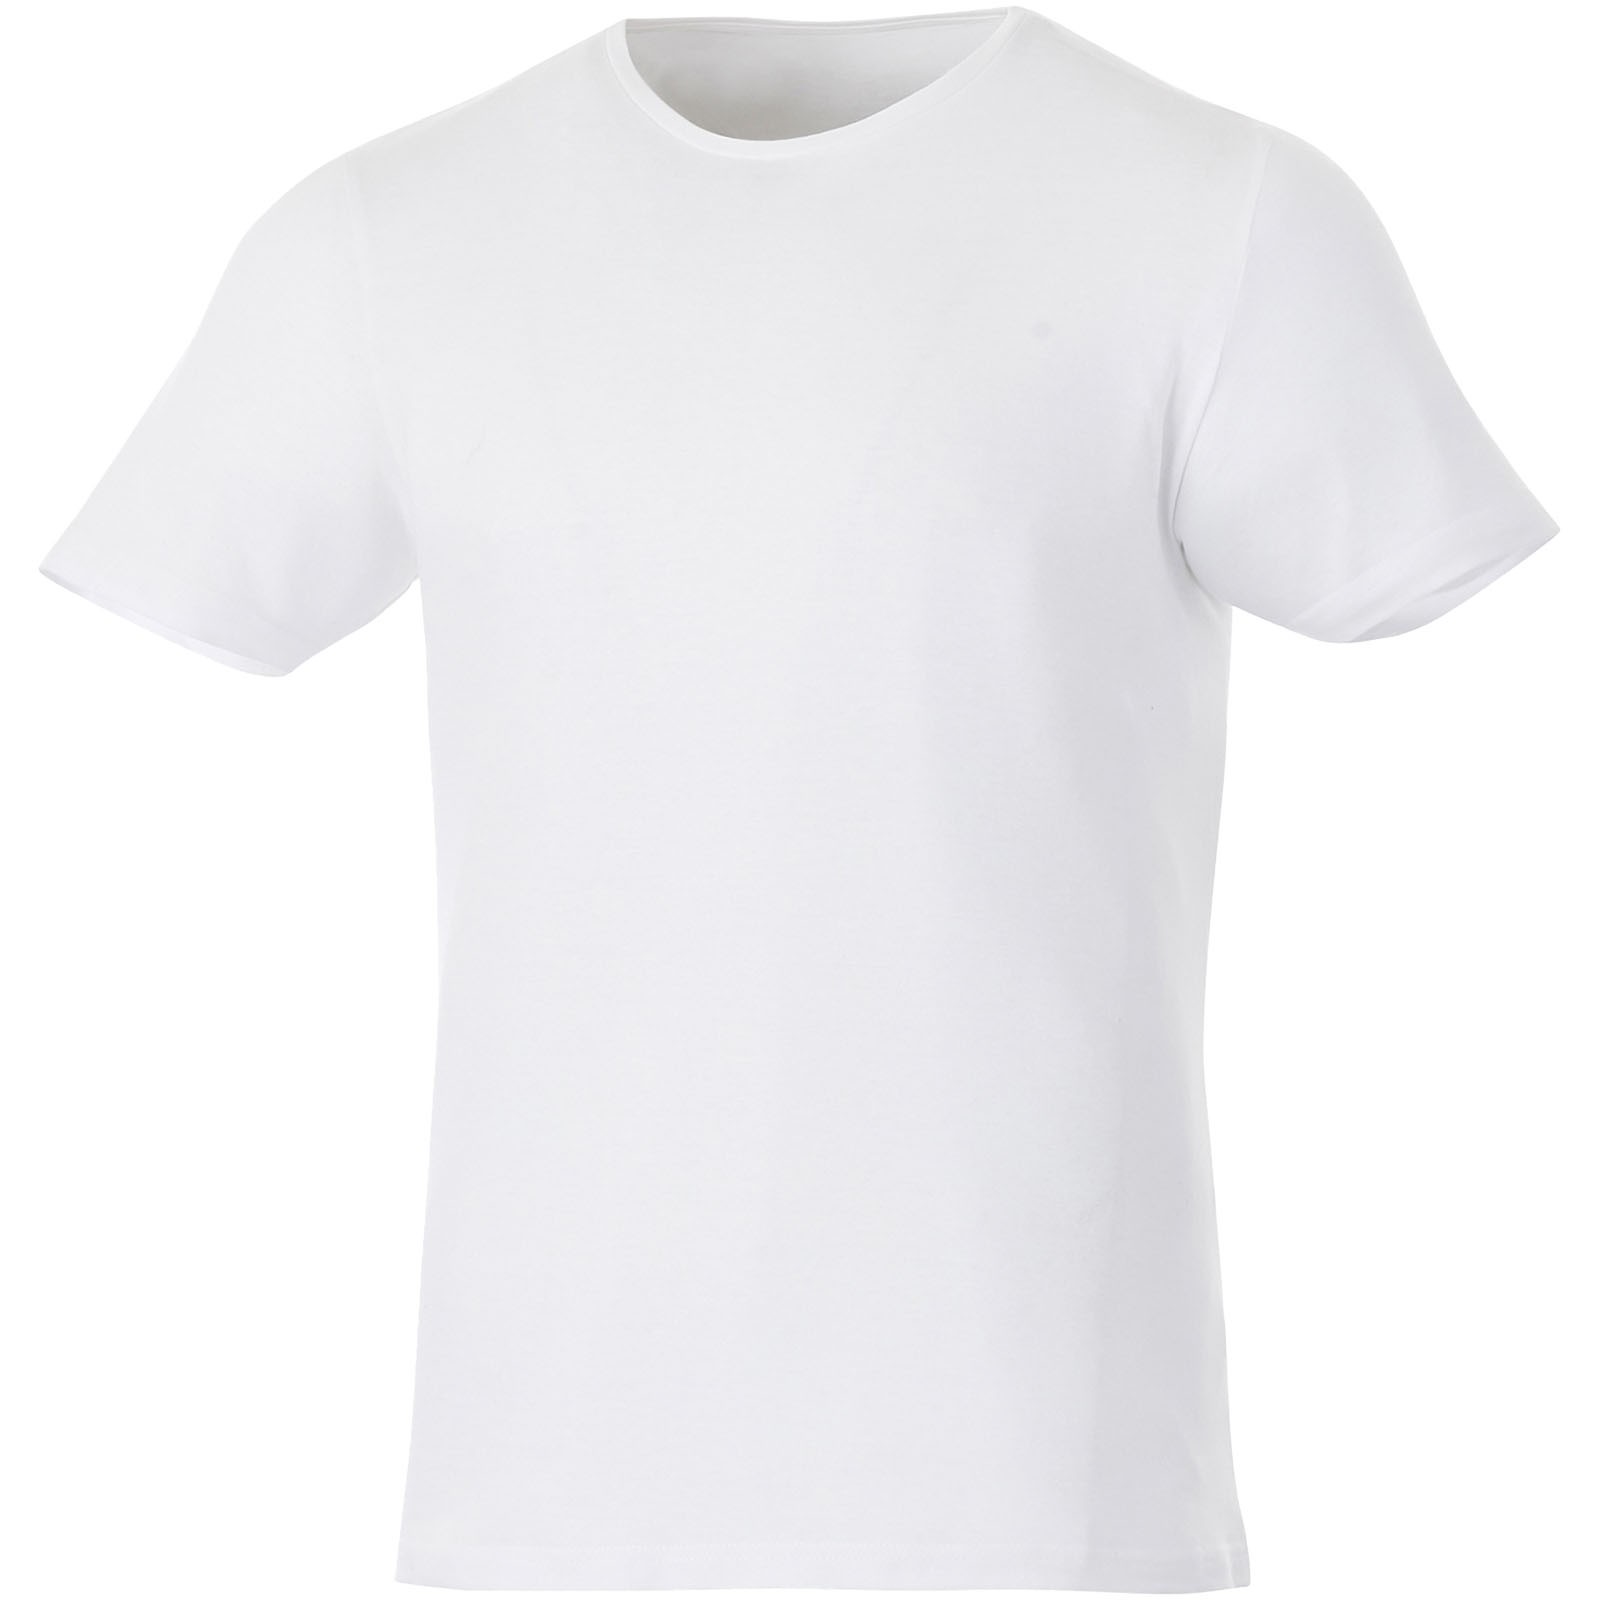 Finney short sleeve T-shirt - White / XXS